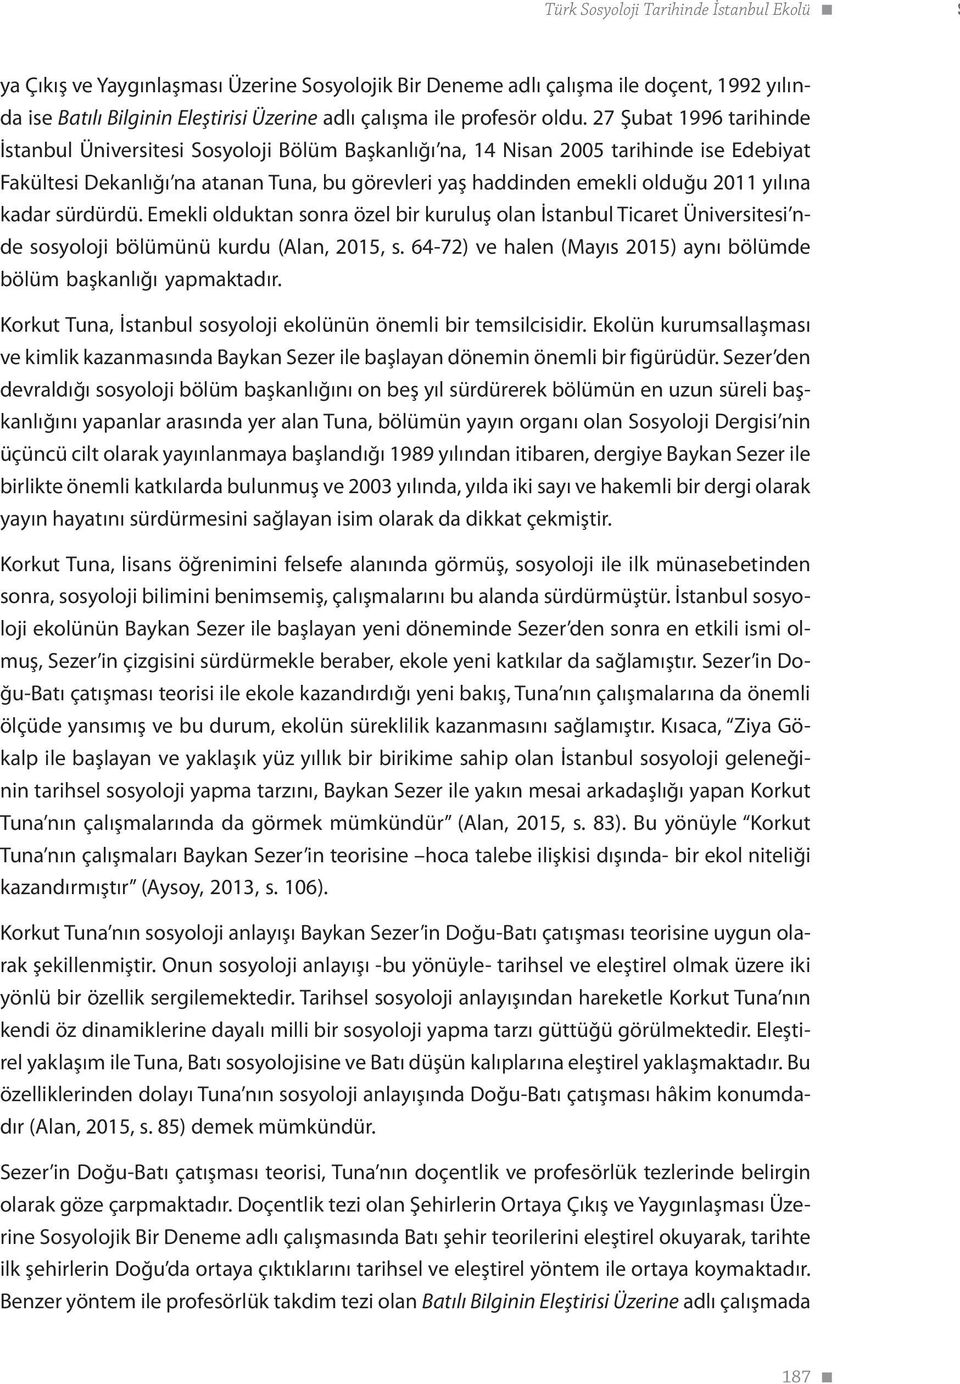 27 Şubat 1996 tarihinde İstanbul Üniversitesi Sosyoloji Bölüm Başkanlığı na, 14 Nisan 2005 tarihinde ise Edebiyat Fakültesi Dekanlığı na atanan Tuna, bu görevleri yaş haddinden emekli olduğu 2011